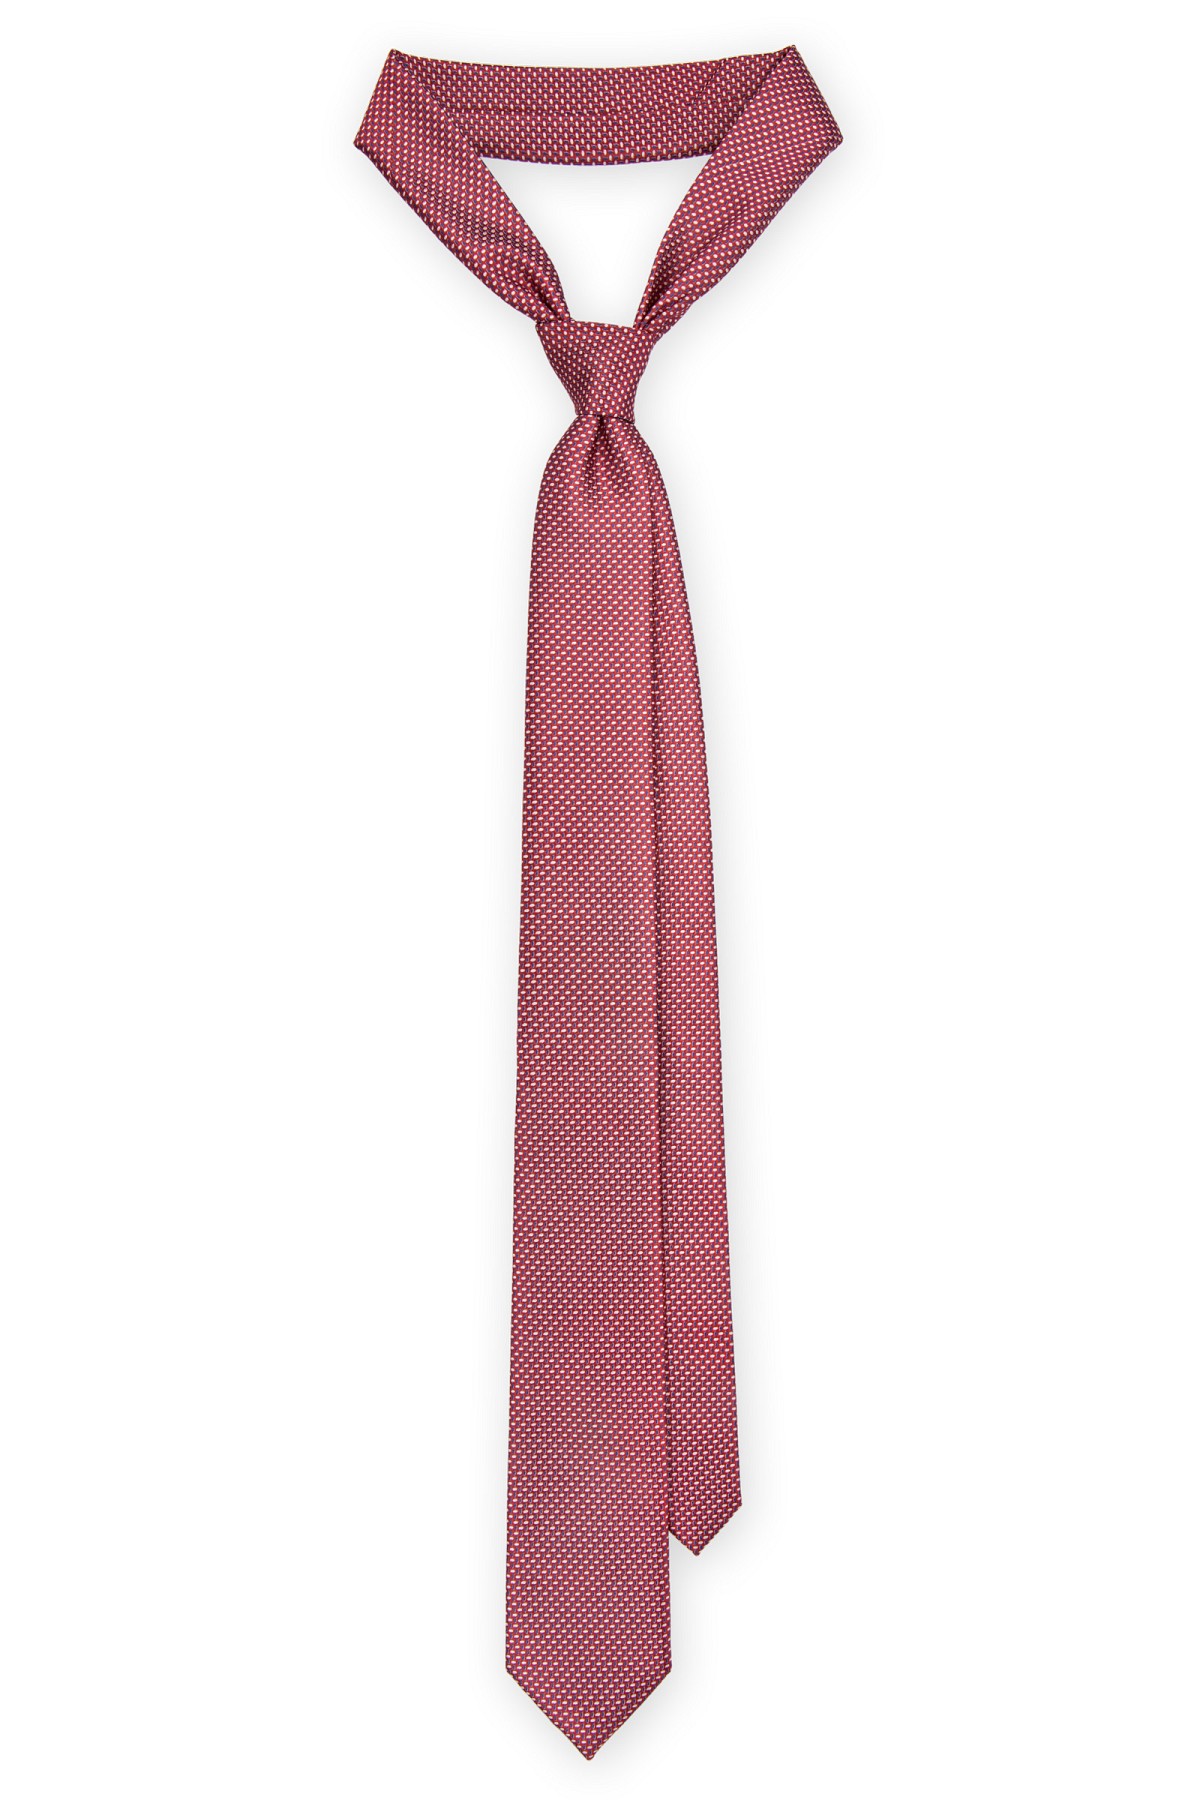 Lancerto - Krawat czerwony mikrowzór